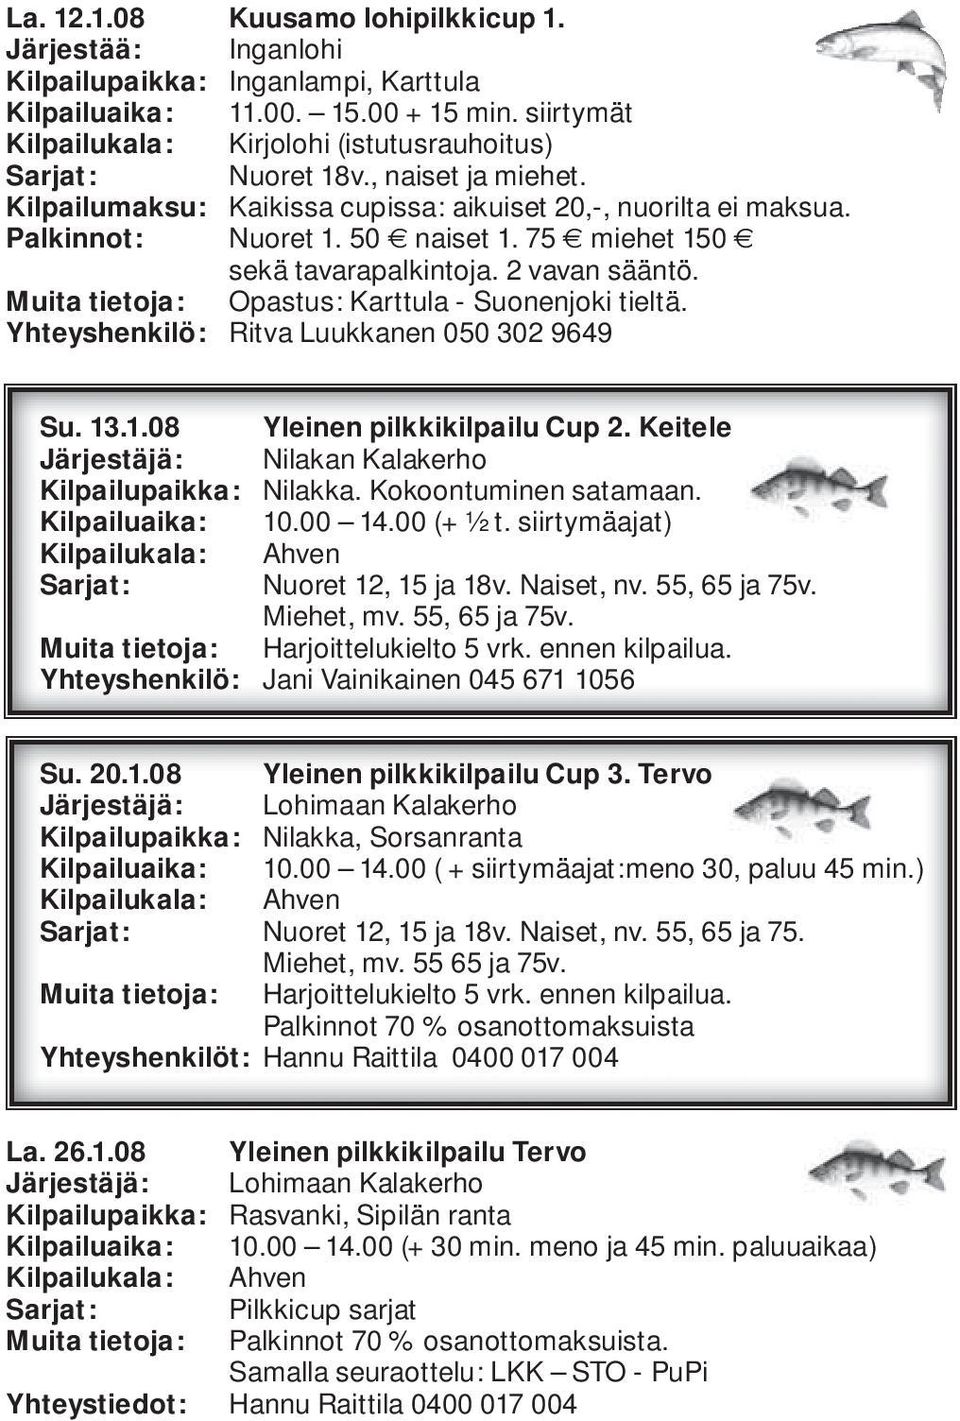 75 miehet 150 sekä tavarapalkintoja. 2 vavan sääntö. Muita tietoja: Opastus: Karttula - Suonenjoki tieltä. Yhteyshenkilö: Ritva Luukkanen 050 302 9649 Su. 13.1.08 Yleinen pilkkikilpailu Cup 2.